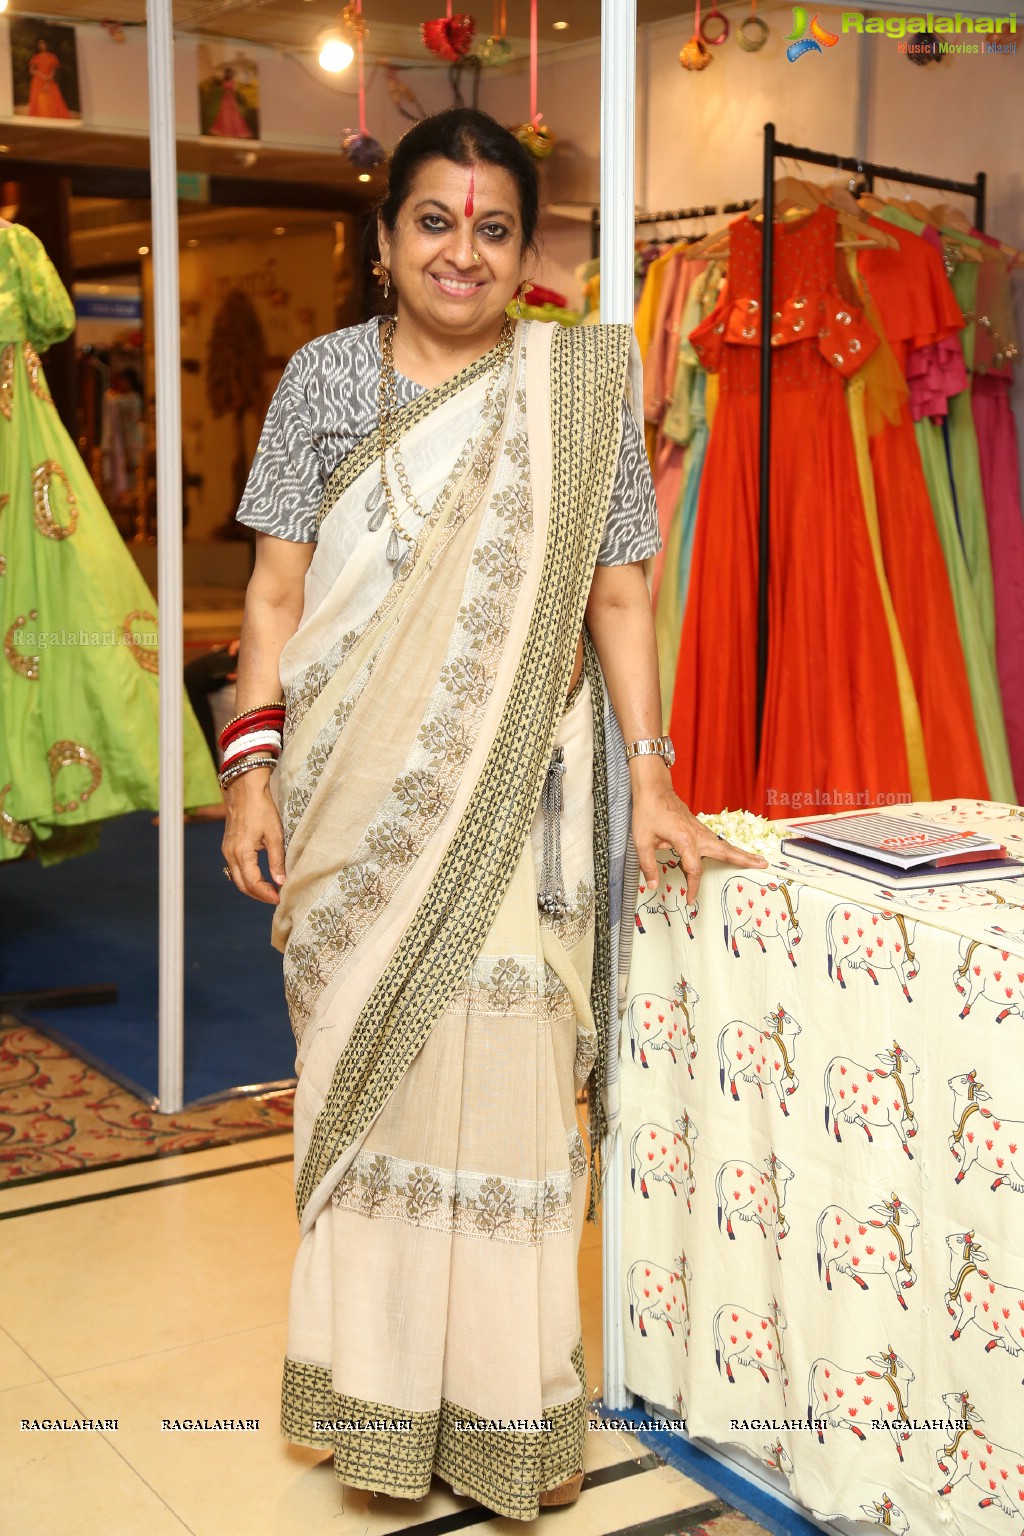 Absalut Style 2017 at Taj Krishna, Hyderabad (Day 2)